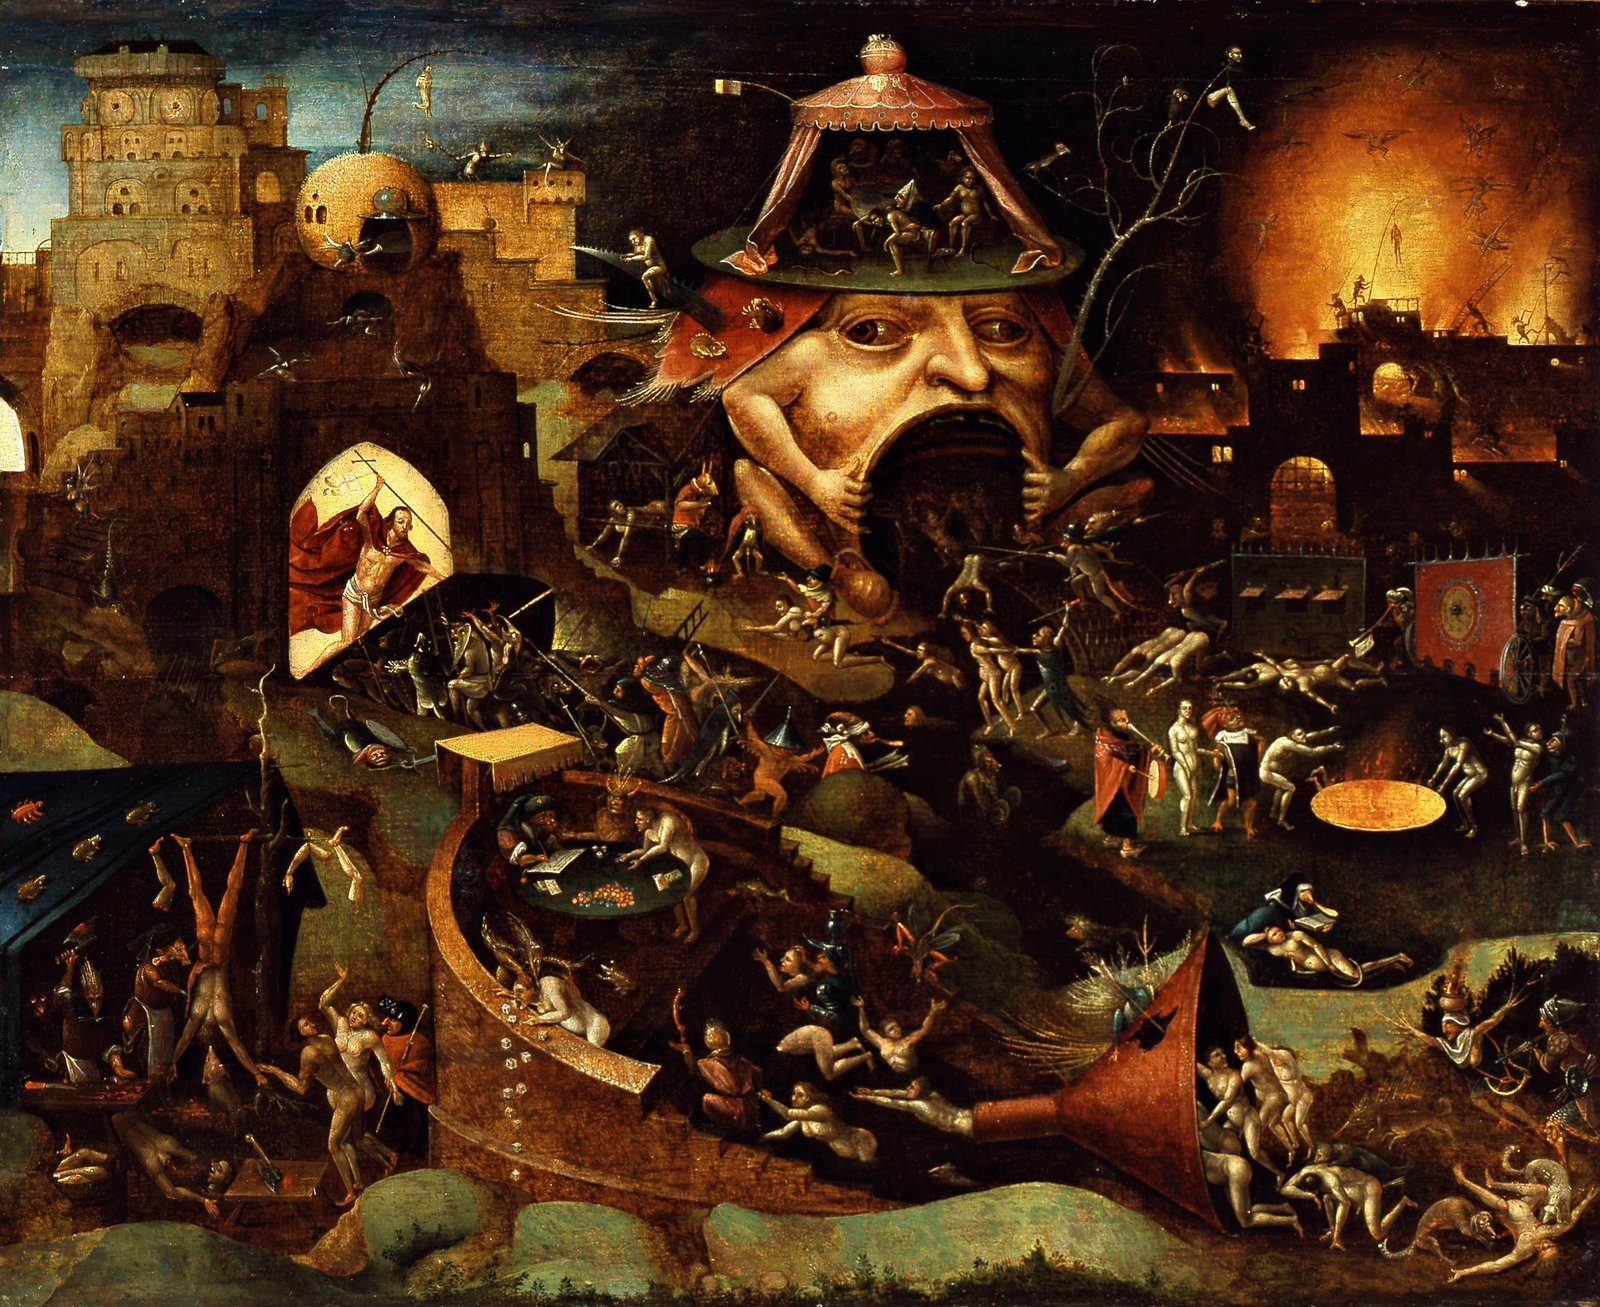 come across Harmful Foster parents Hieronymus Bosch: O Mistério por trás das pinturas do artista